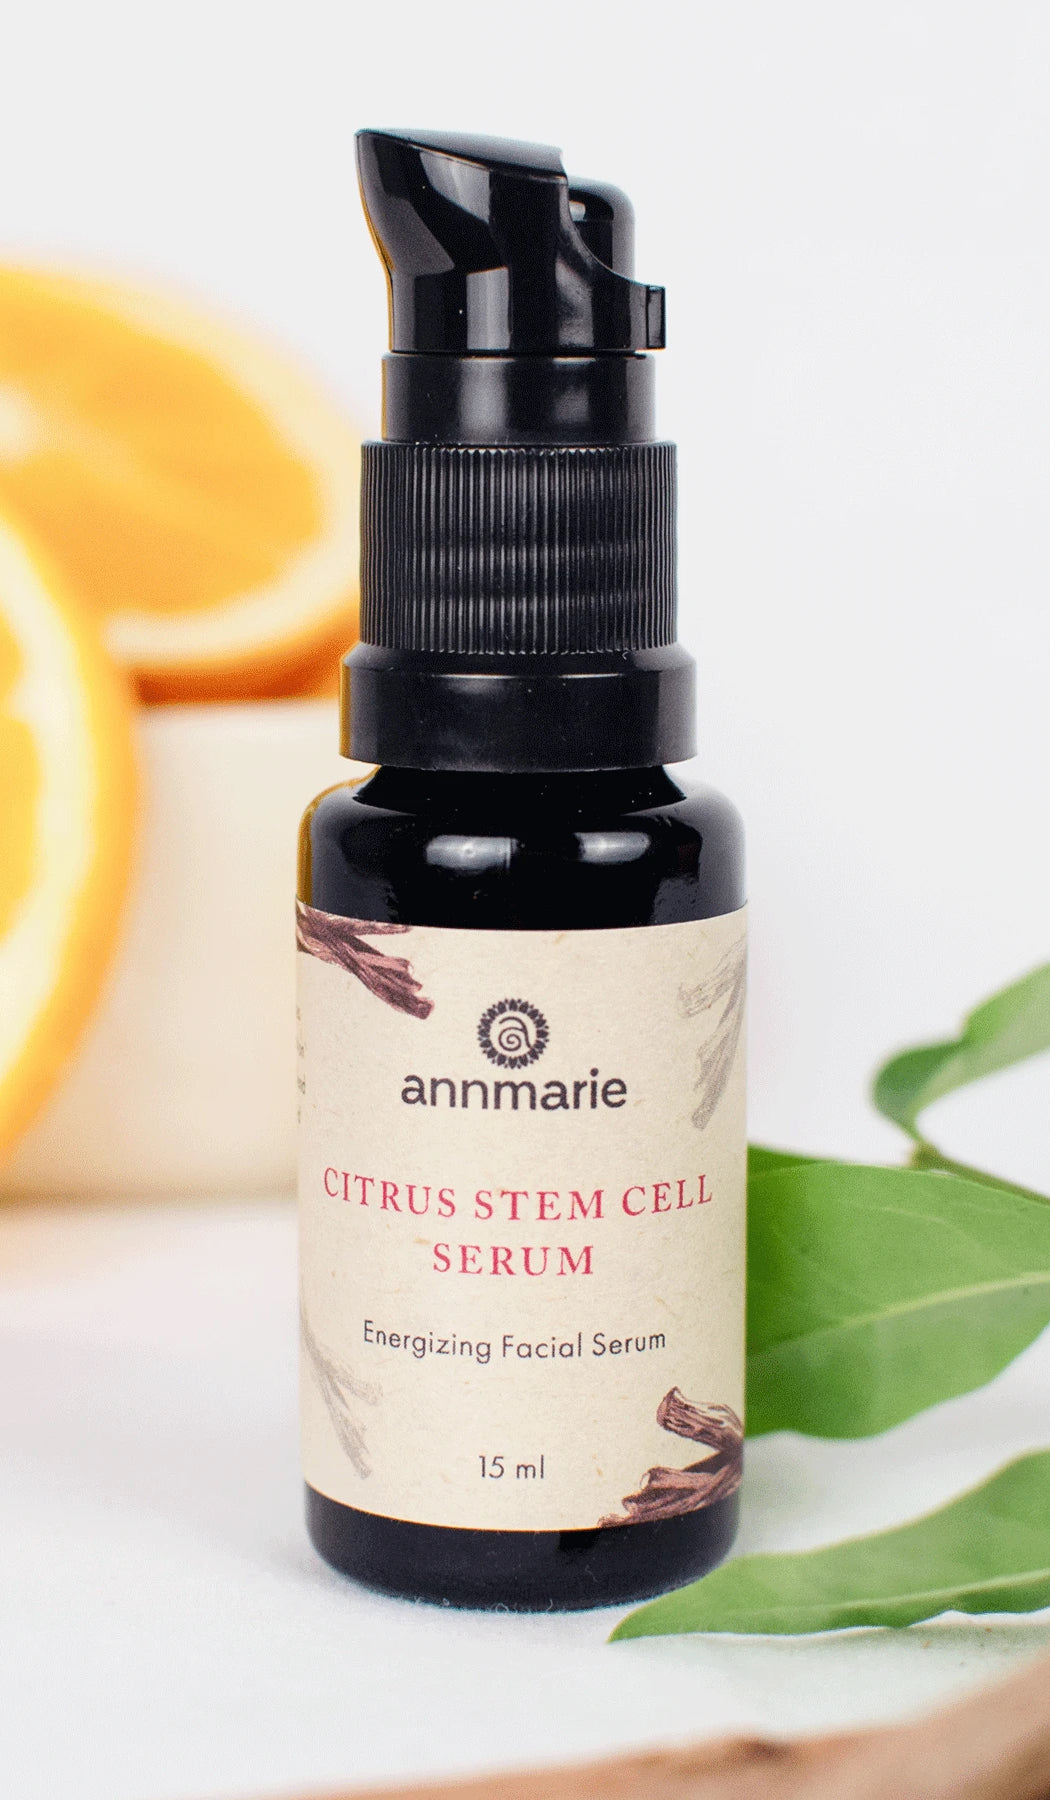 Citrus Stem Cell Serum